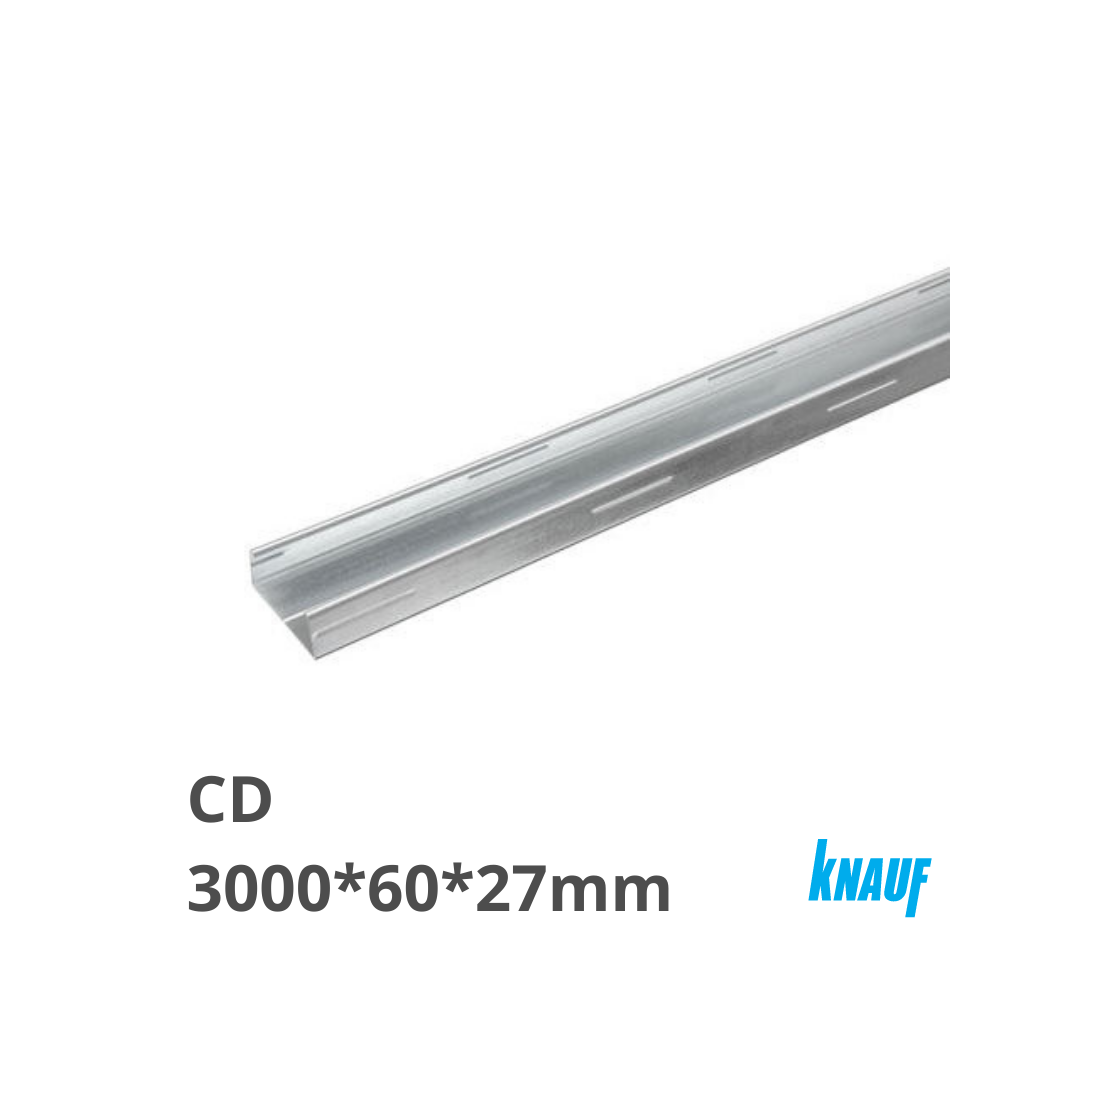 KNAUF lubų-sienų profilis CD 3000*60*27*0,6mm